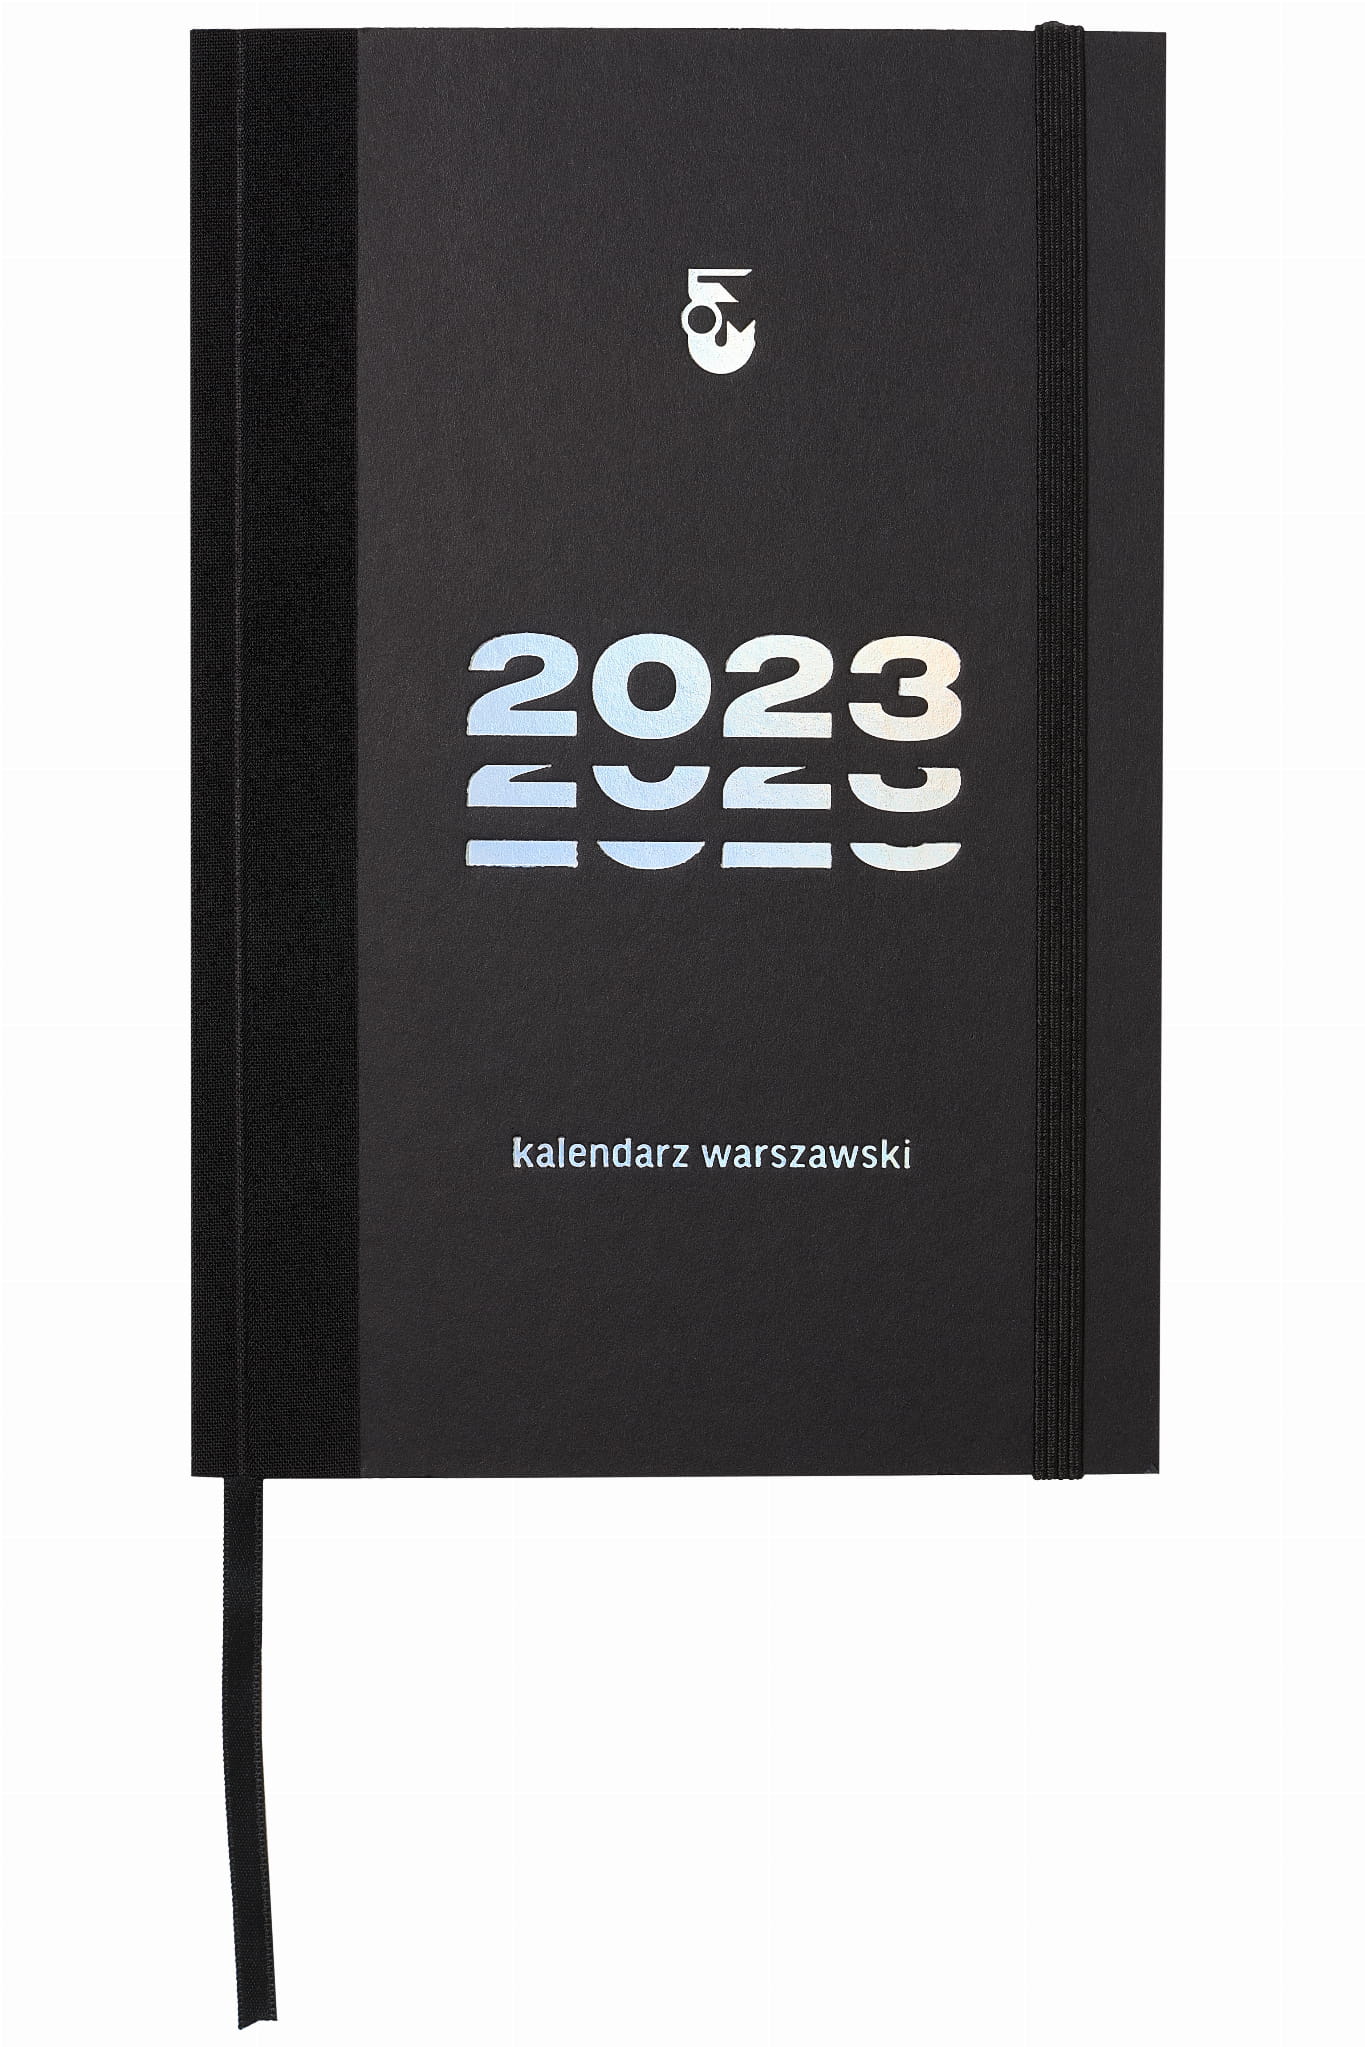 2023 kalendarz warszawski (opr.zbiorowe)